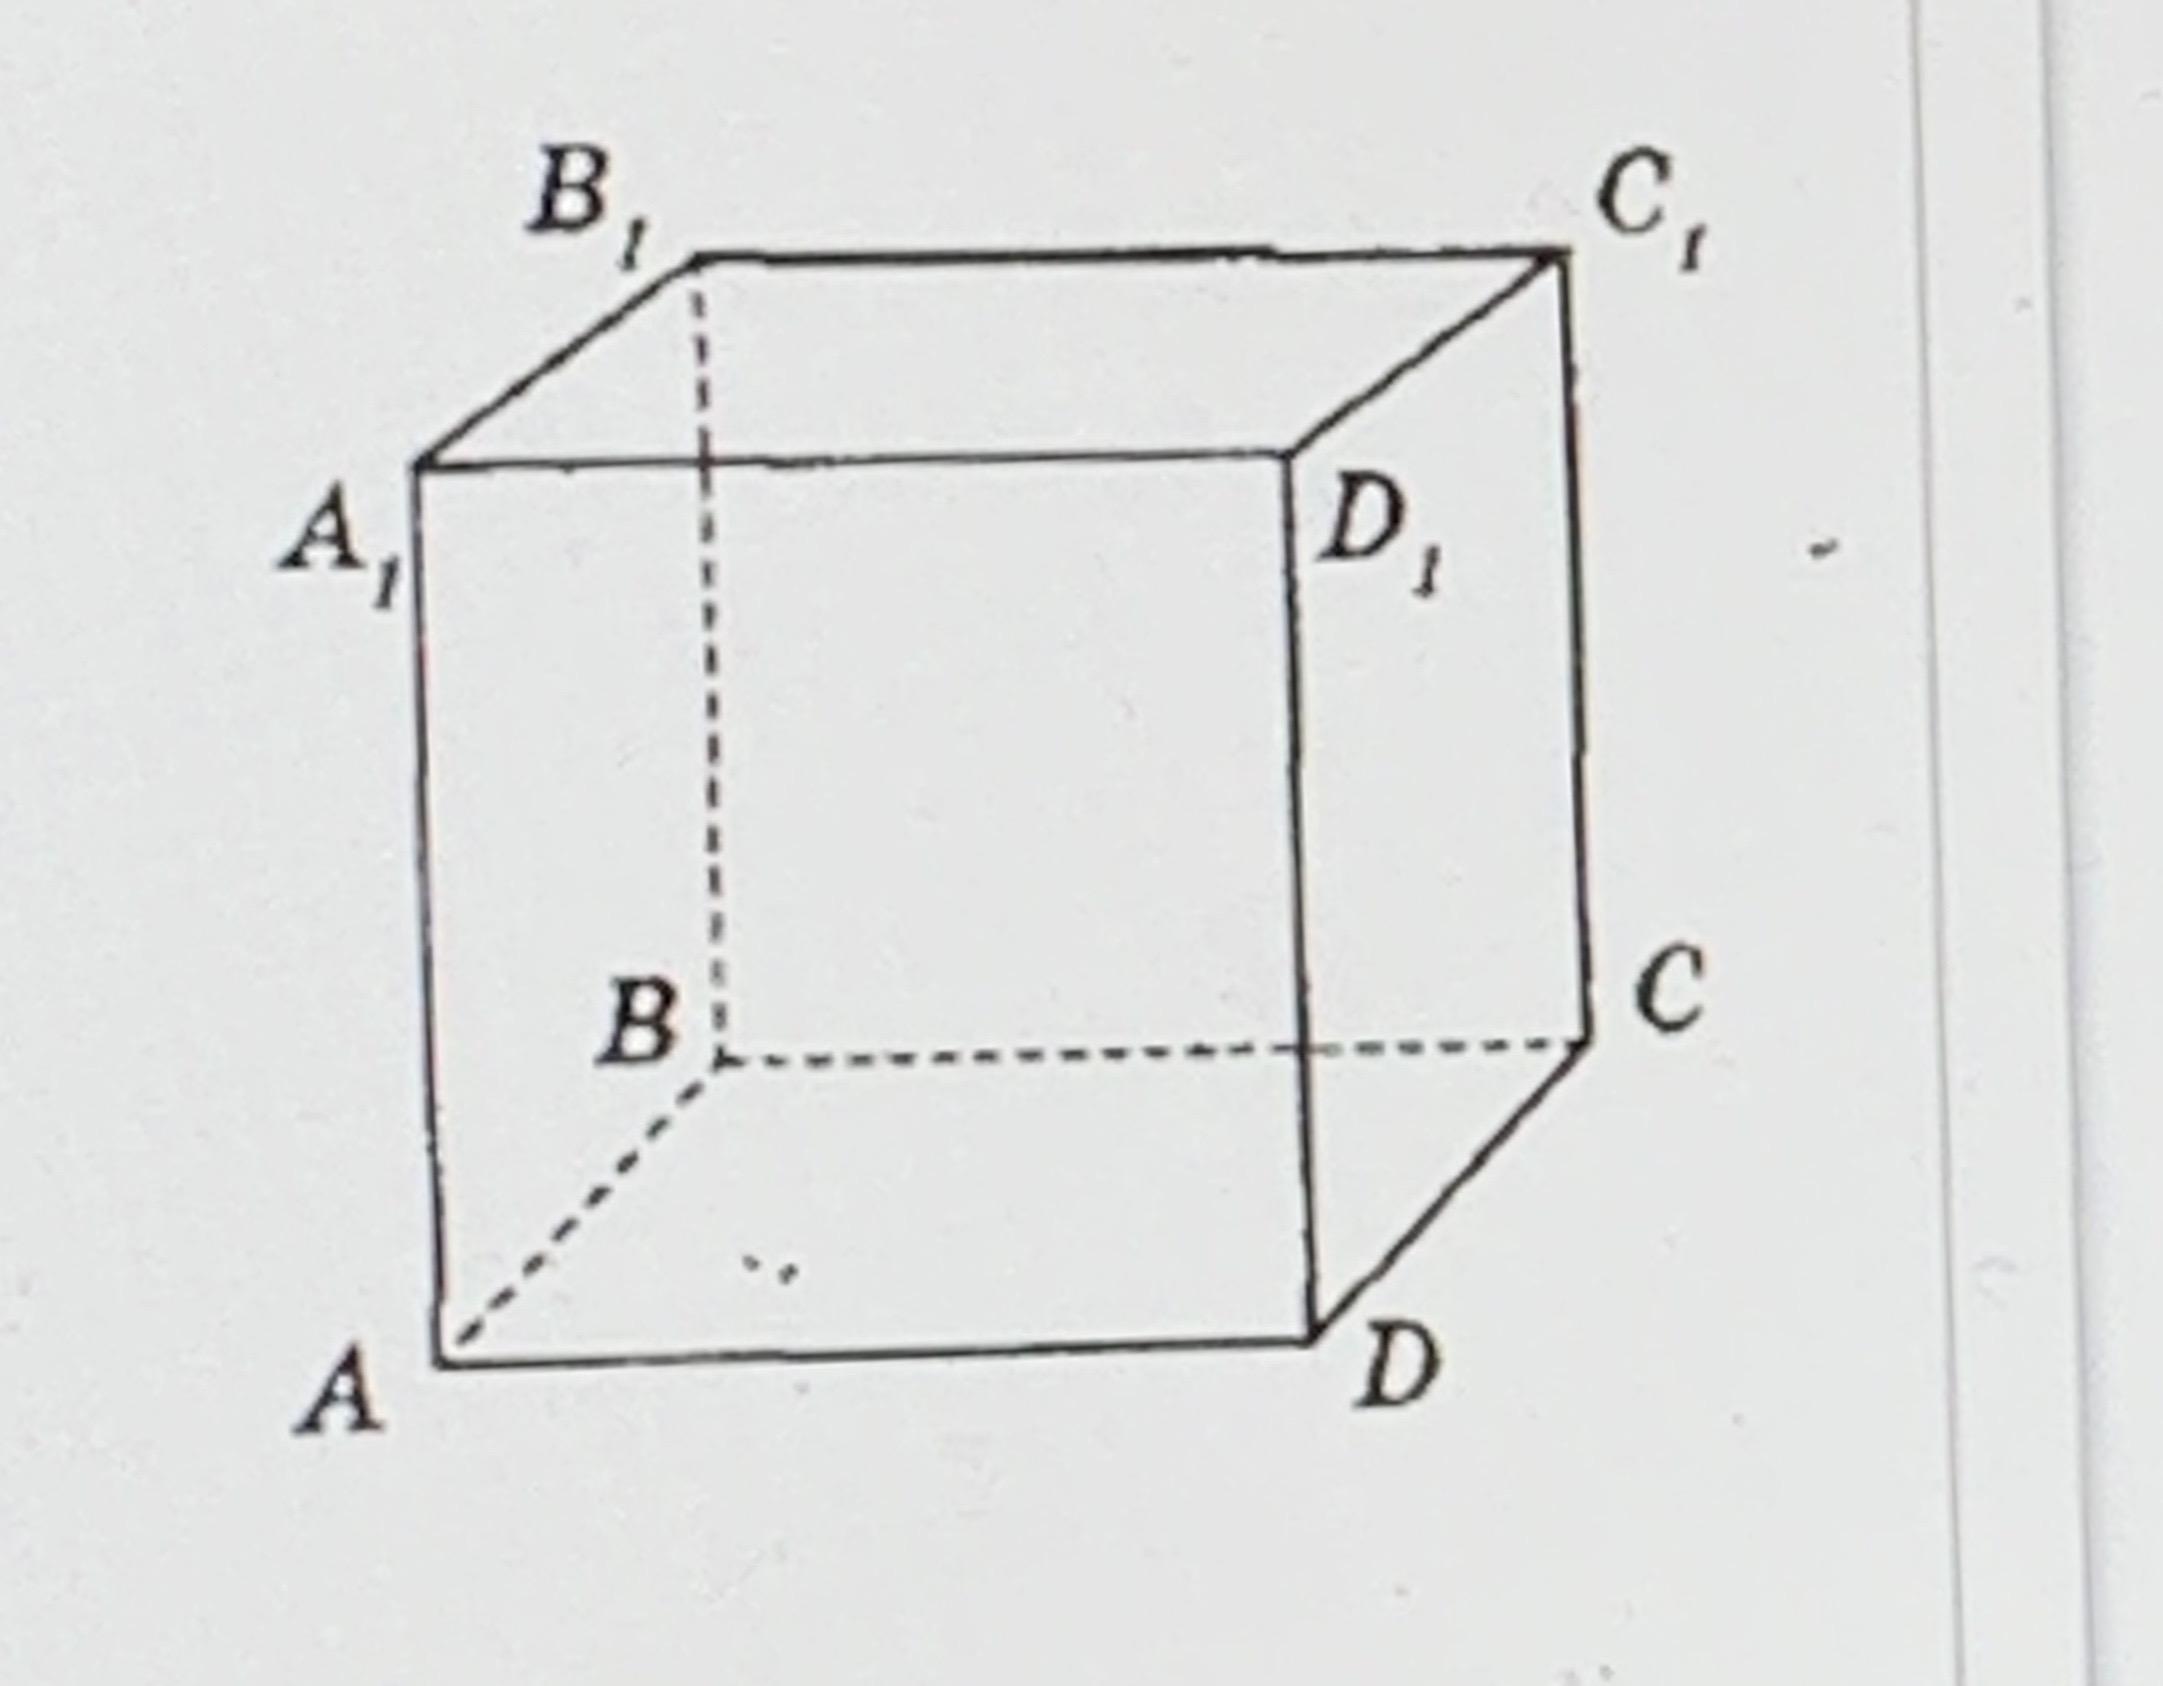 Какие прямые в кубе перпендикулярны